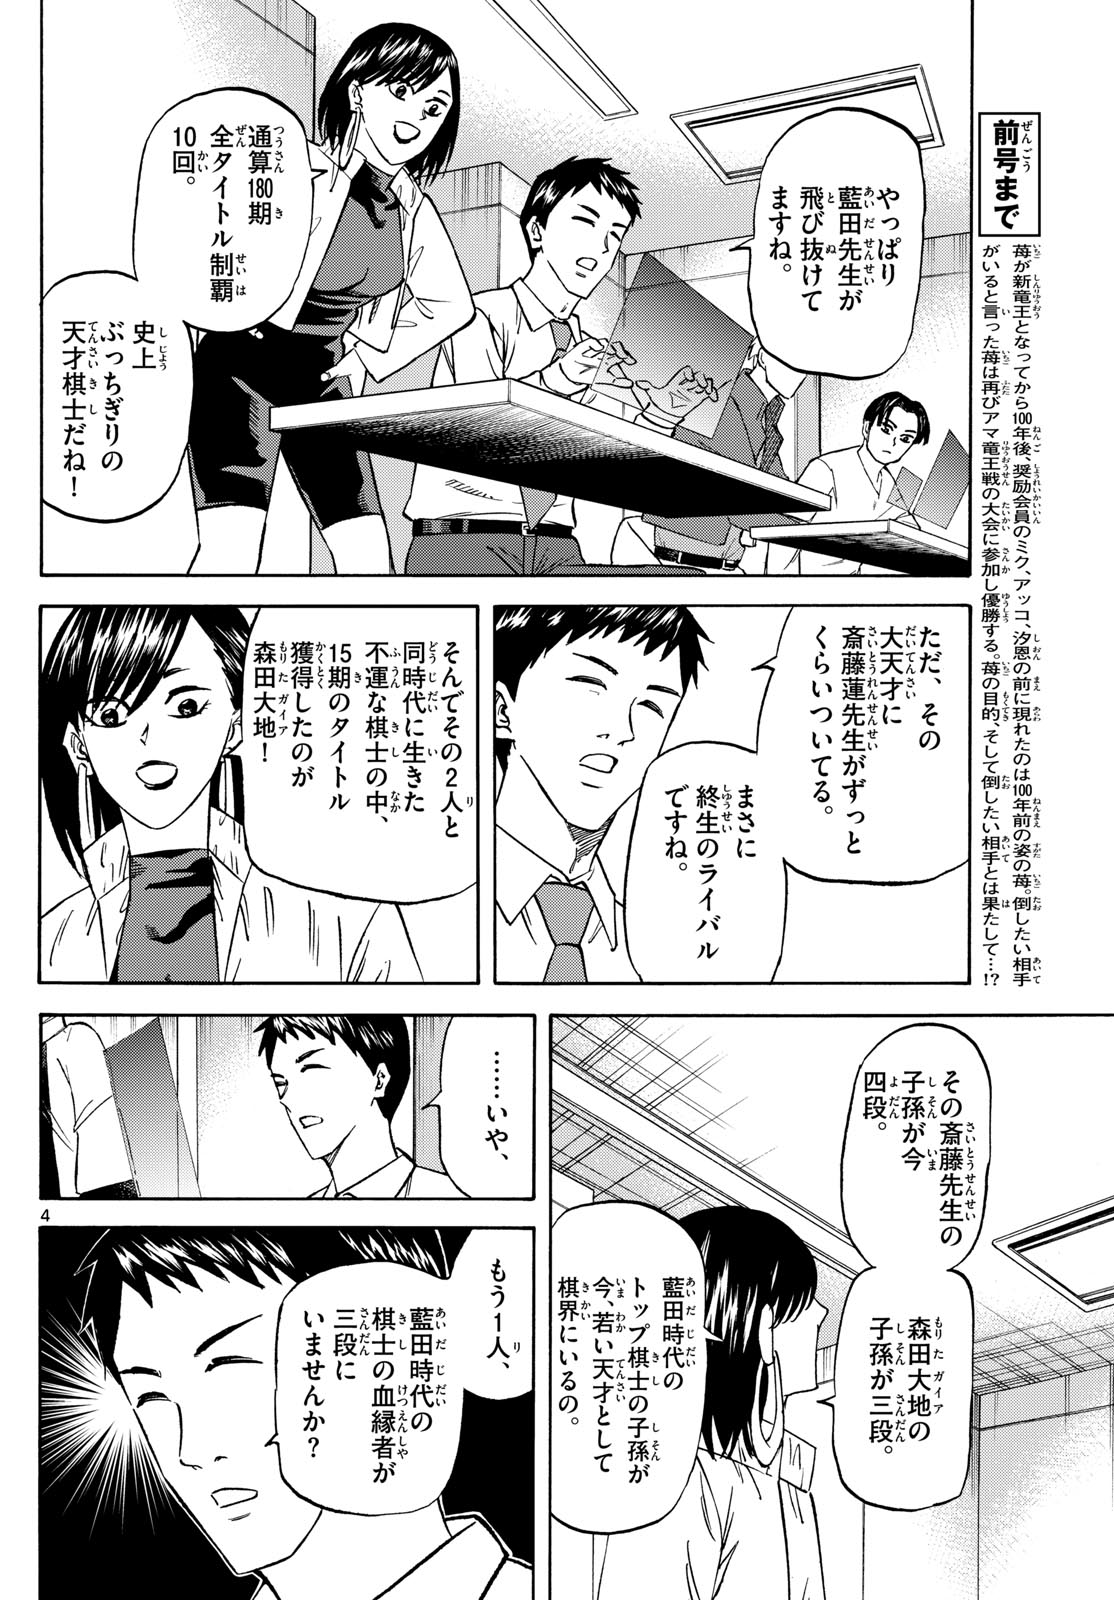 Tatsu to Ichigo - Chapter 188 - Page 4